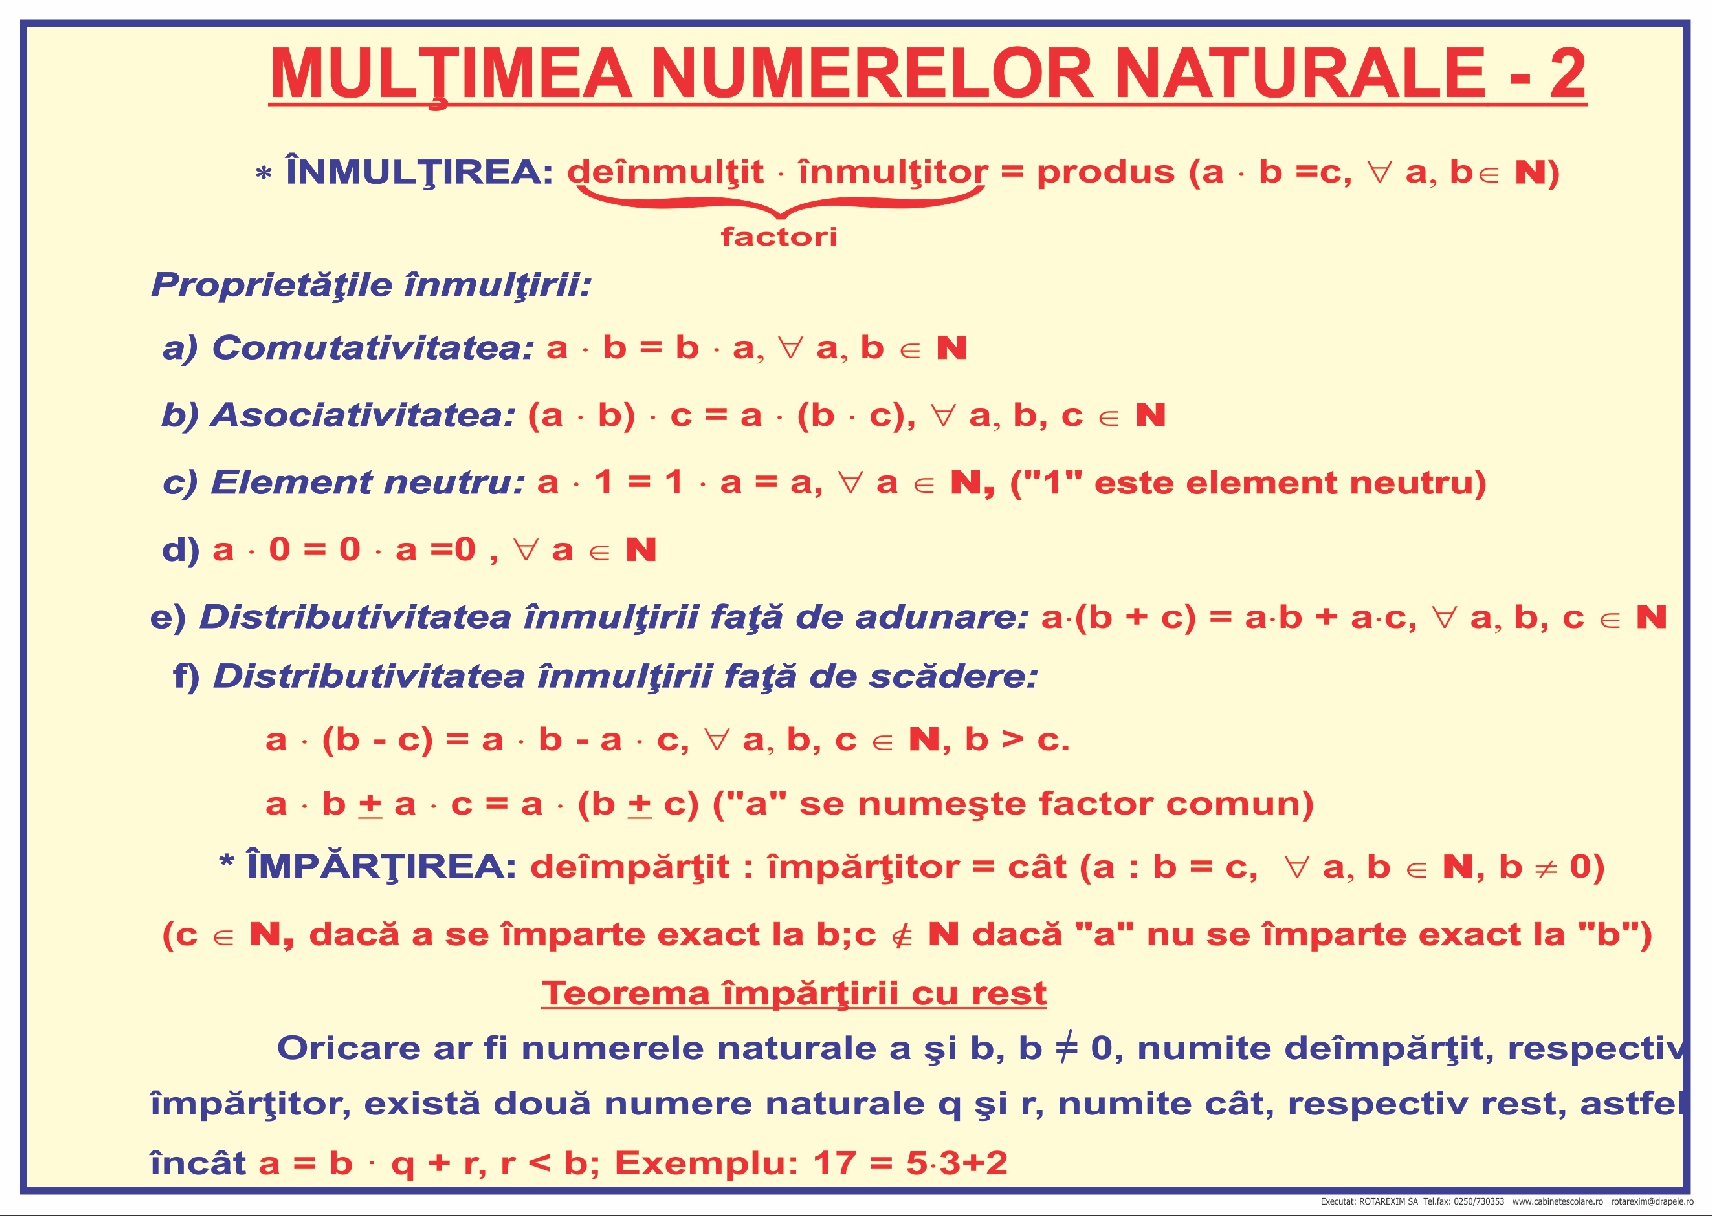 Mulțimea numerelor naturale - 2